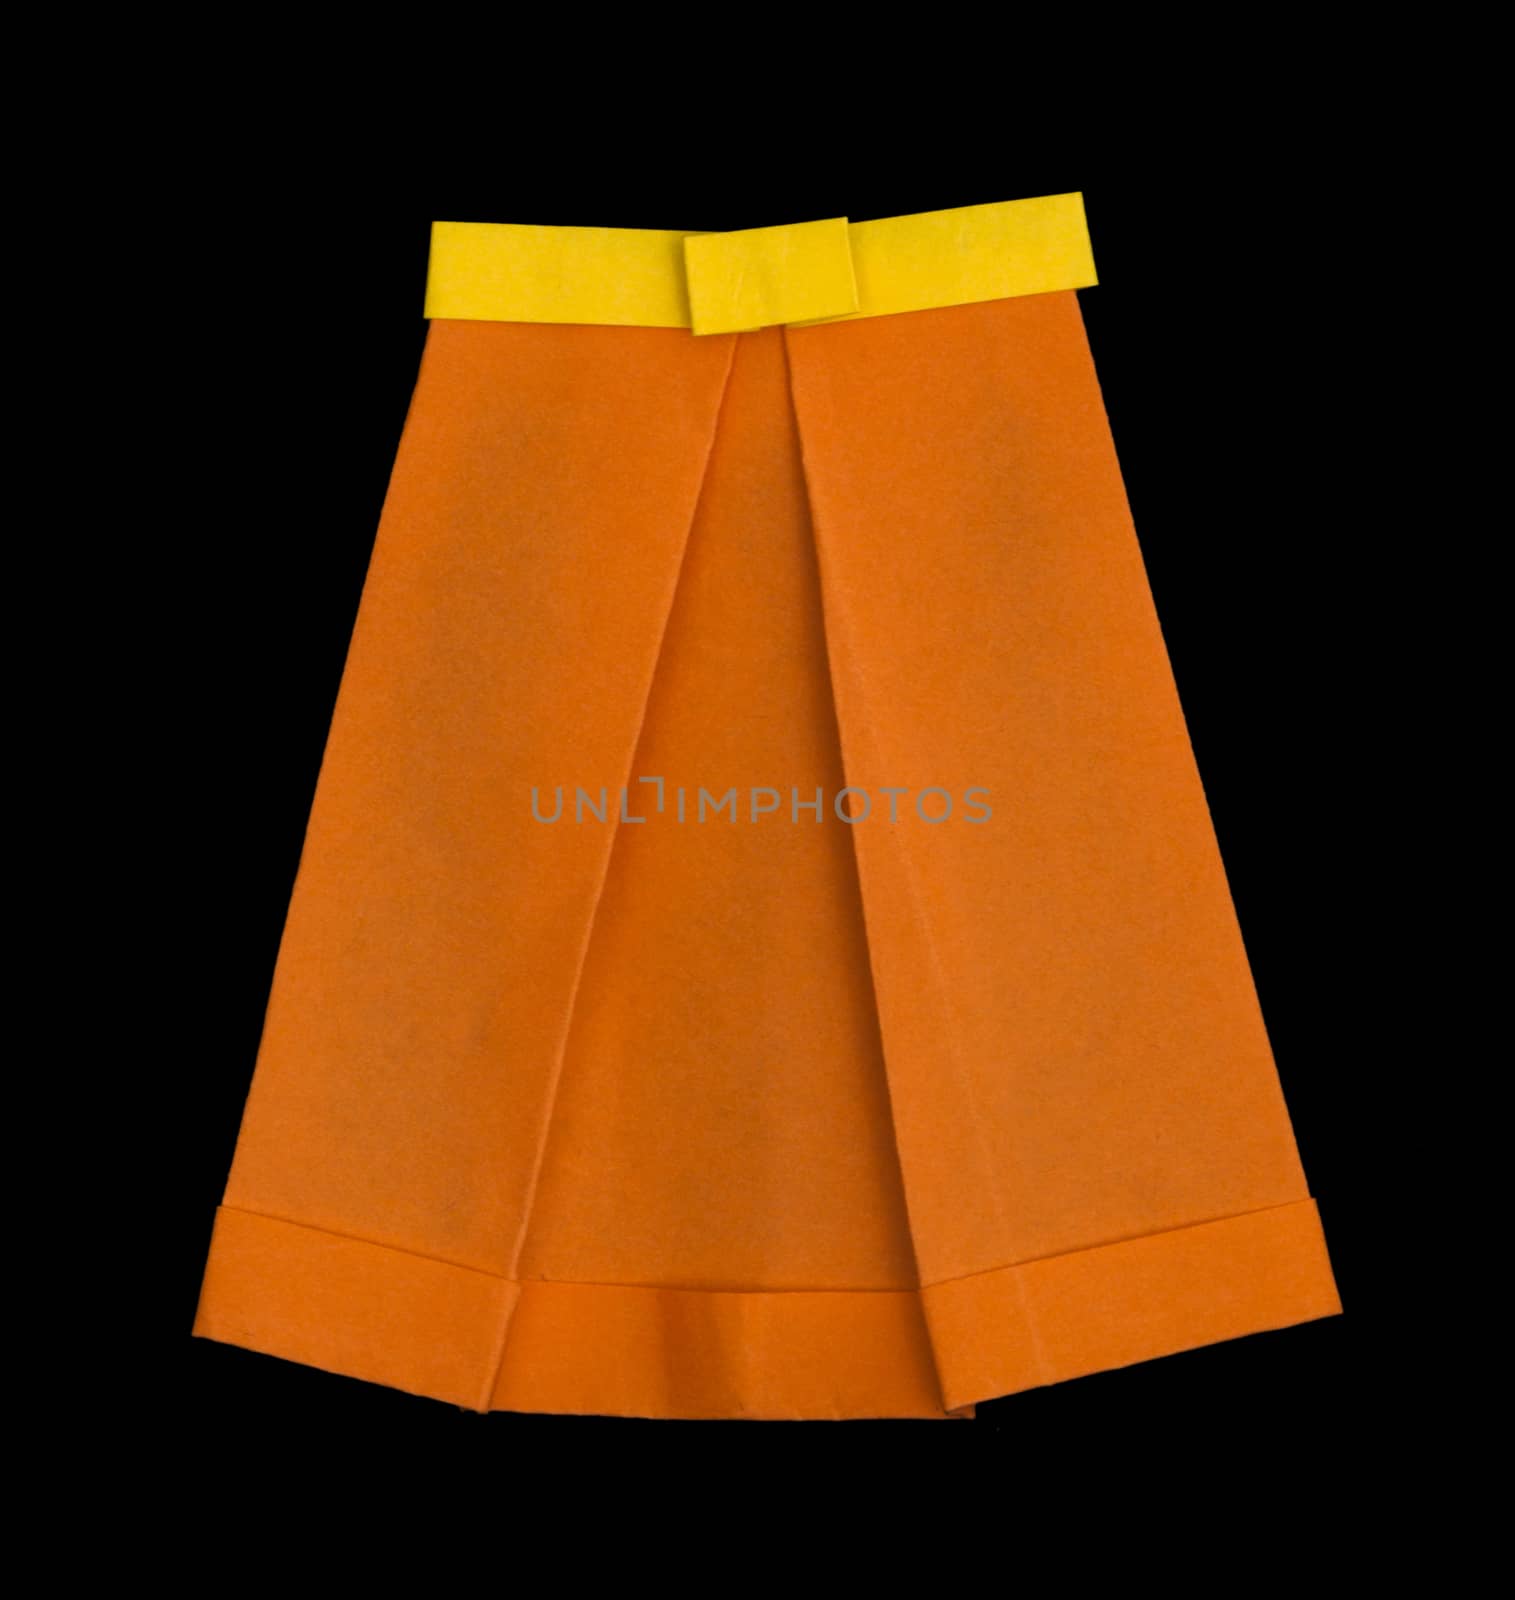 Orange skirt folded origami style